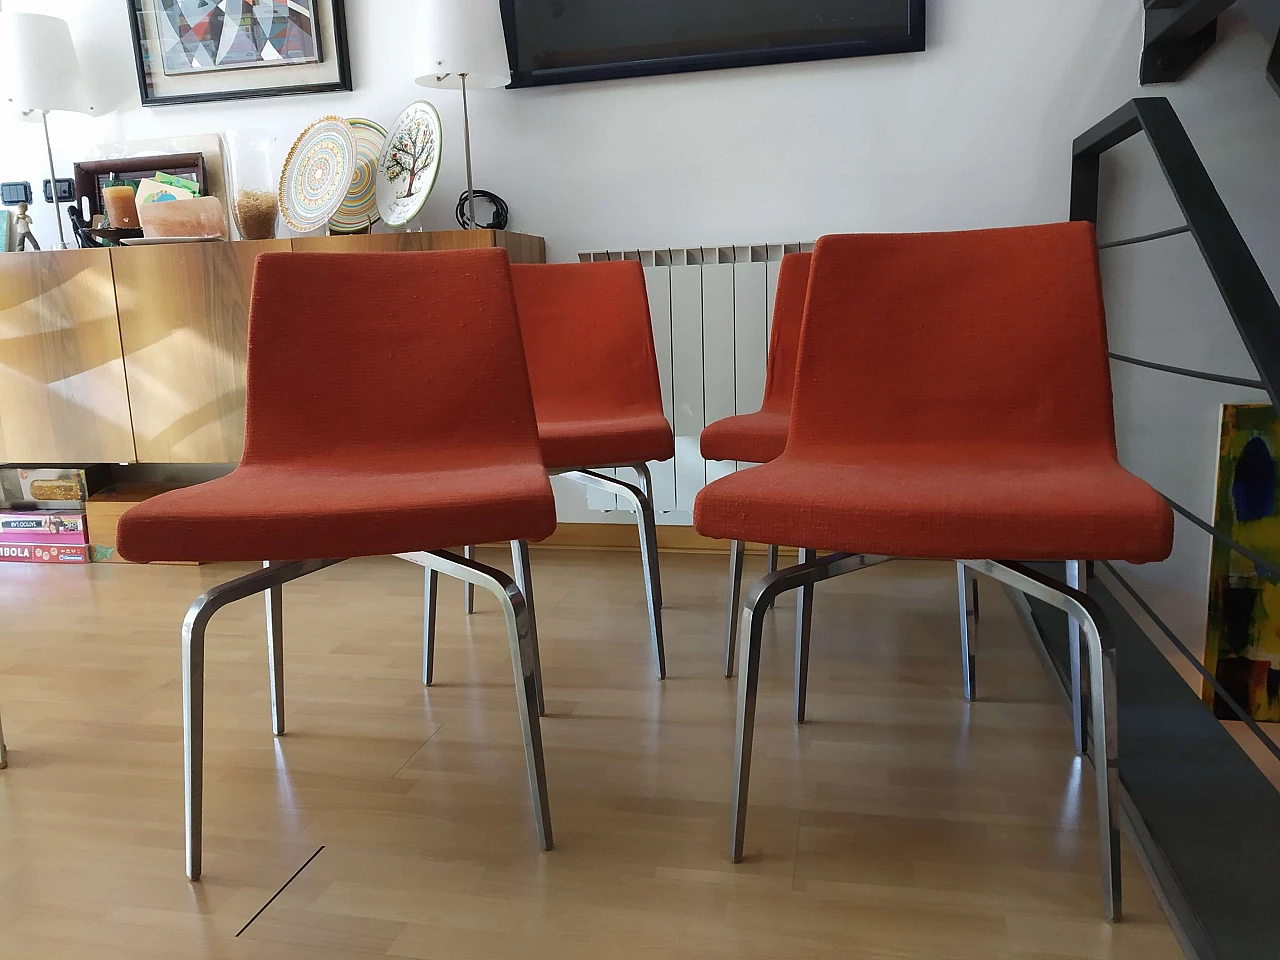 4 Hella Chairs by Mauro Lipparini for MisuraEmme 1477129